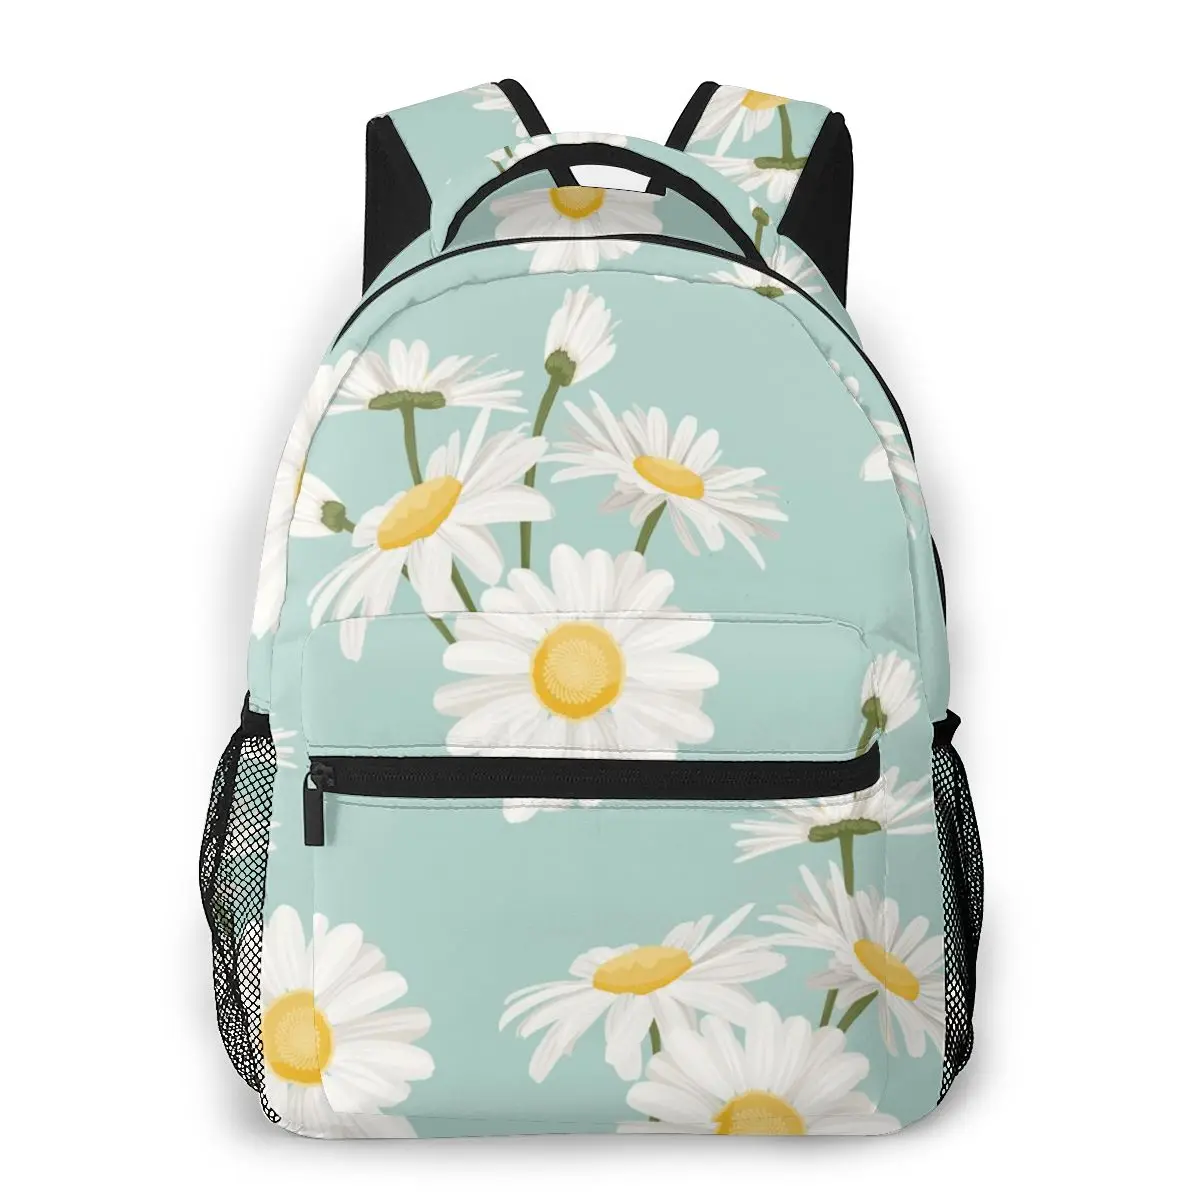 

Дорожные рюкзаки OLN для женщин, вместительный школьный рюкзак для девочек-подростков с маргариткой, ромашкой, полевым лугом, 2020